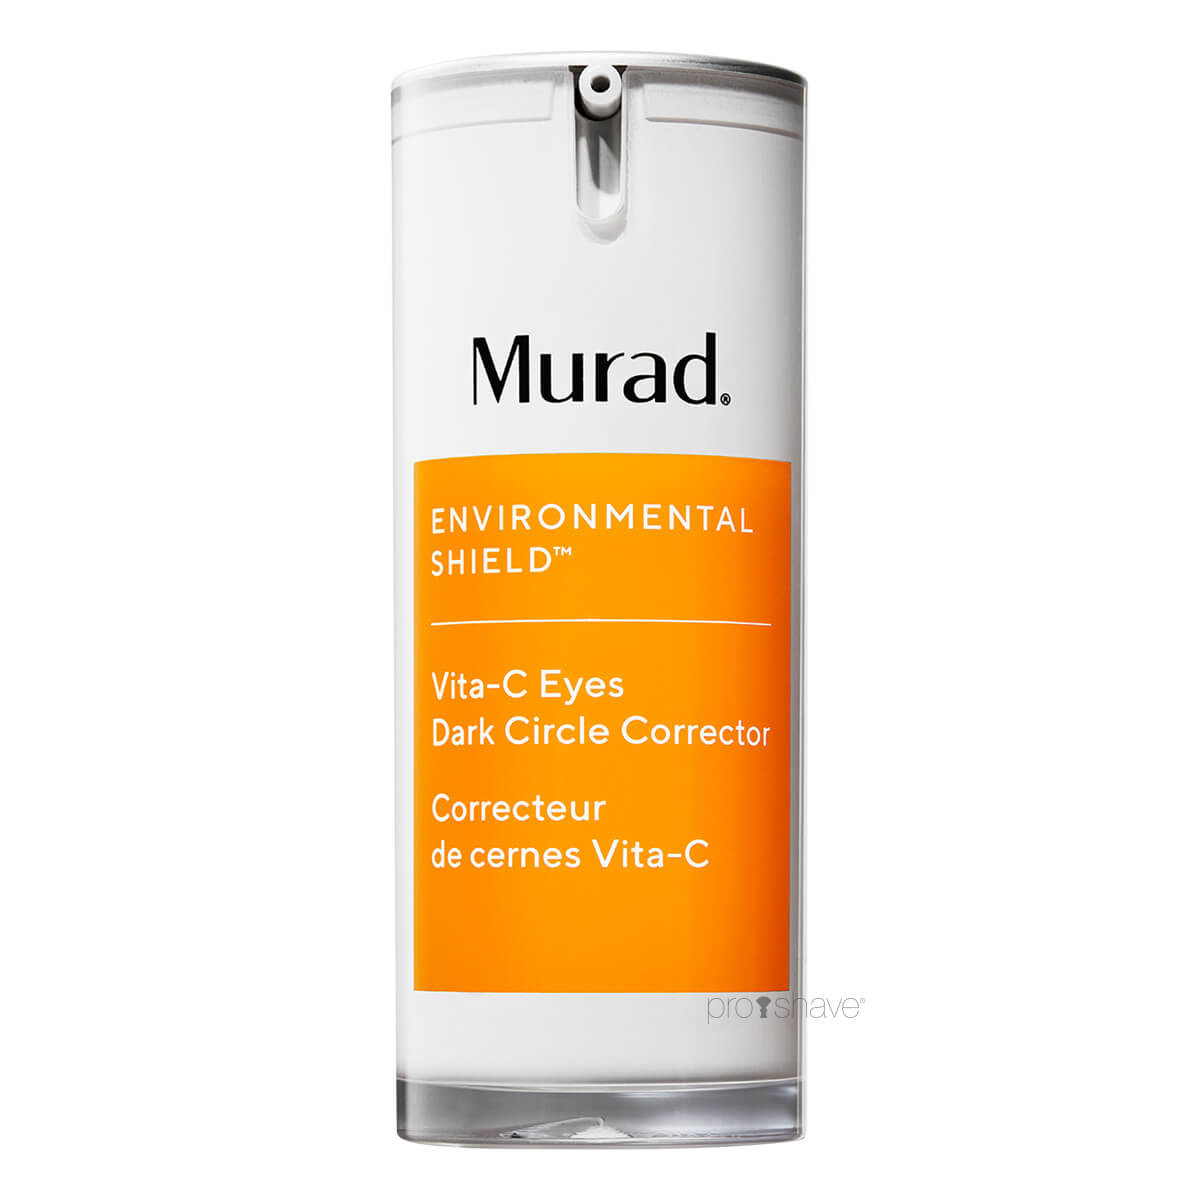 Se Murad Environmental Shield Vita-C Eyes Dark Circle Corrector 15 ml. hos Proshave